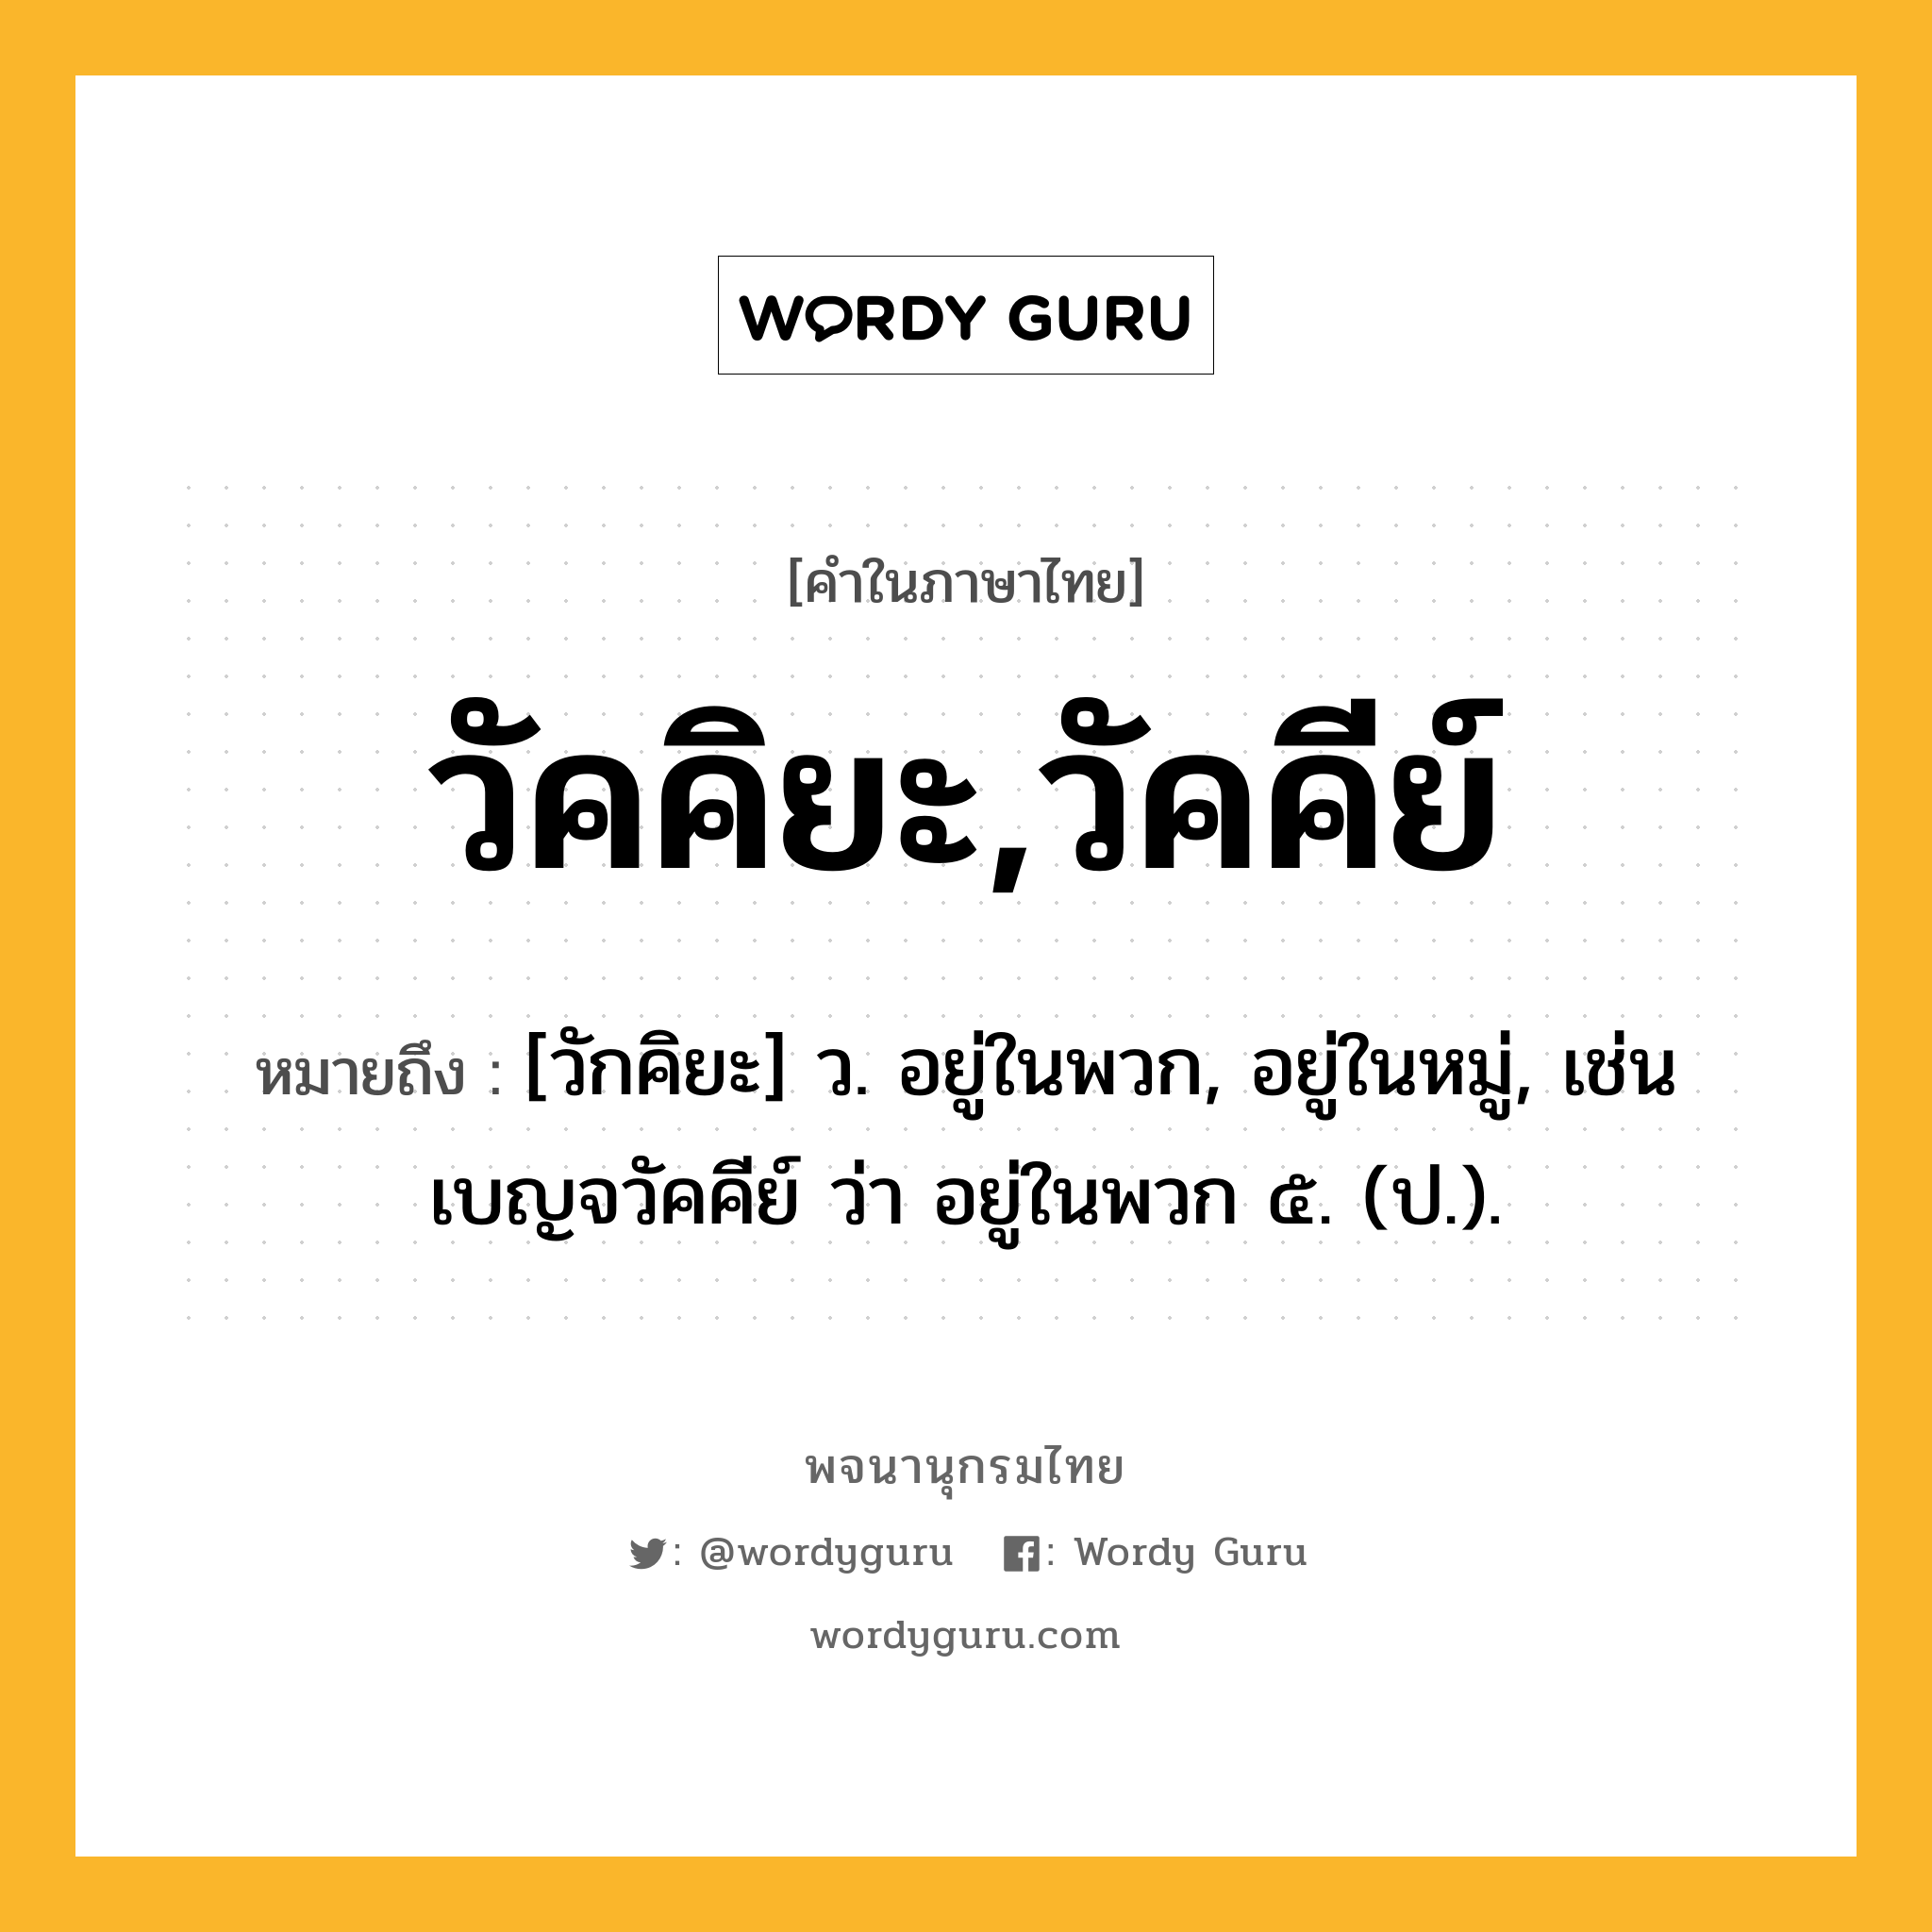 วัคคิยะ,วัคคีย์ หมายถึงอะไร?, คำในภาษาไทย วัคคิยะ,วัคคีย์ หมายถึง [วักคิยะ] ว. อยู่ในพวก, อยู่ในหมู่, เช่น เบญจวัคคีย์ ว่า อยู่ในพวก ๕. (ป.).